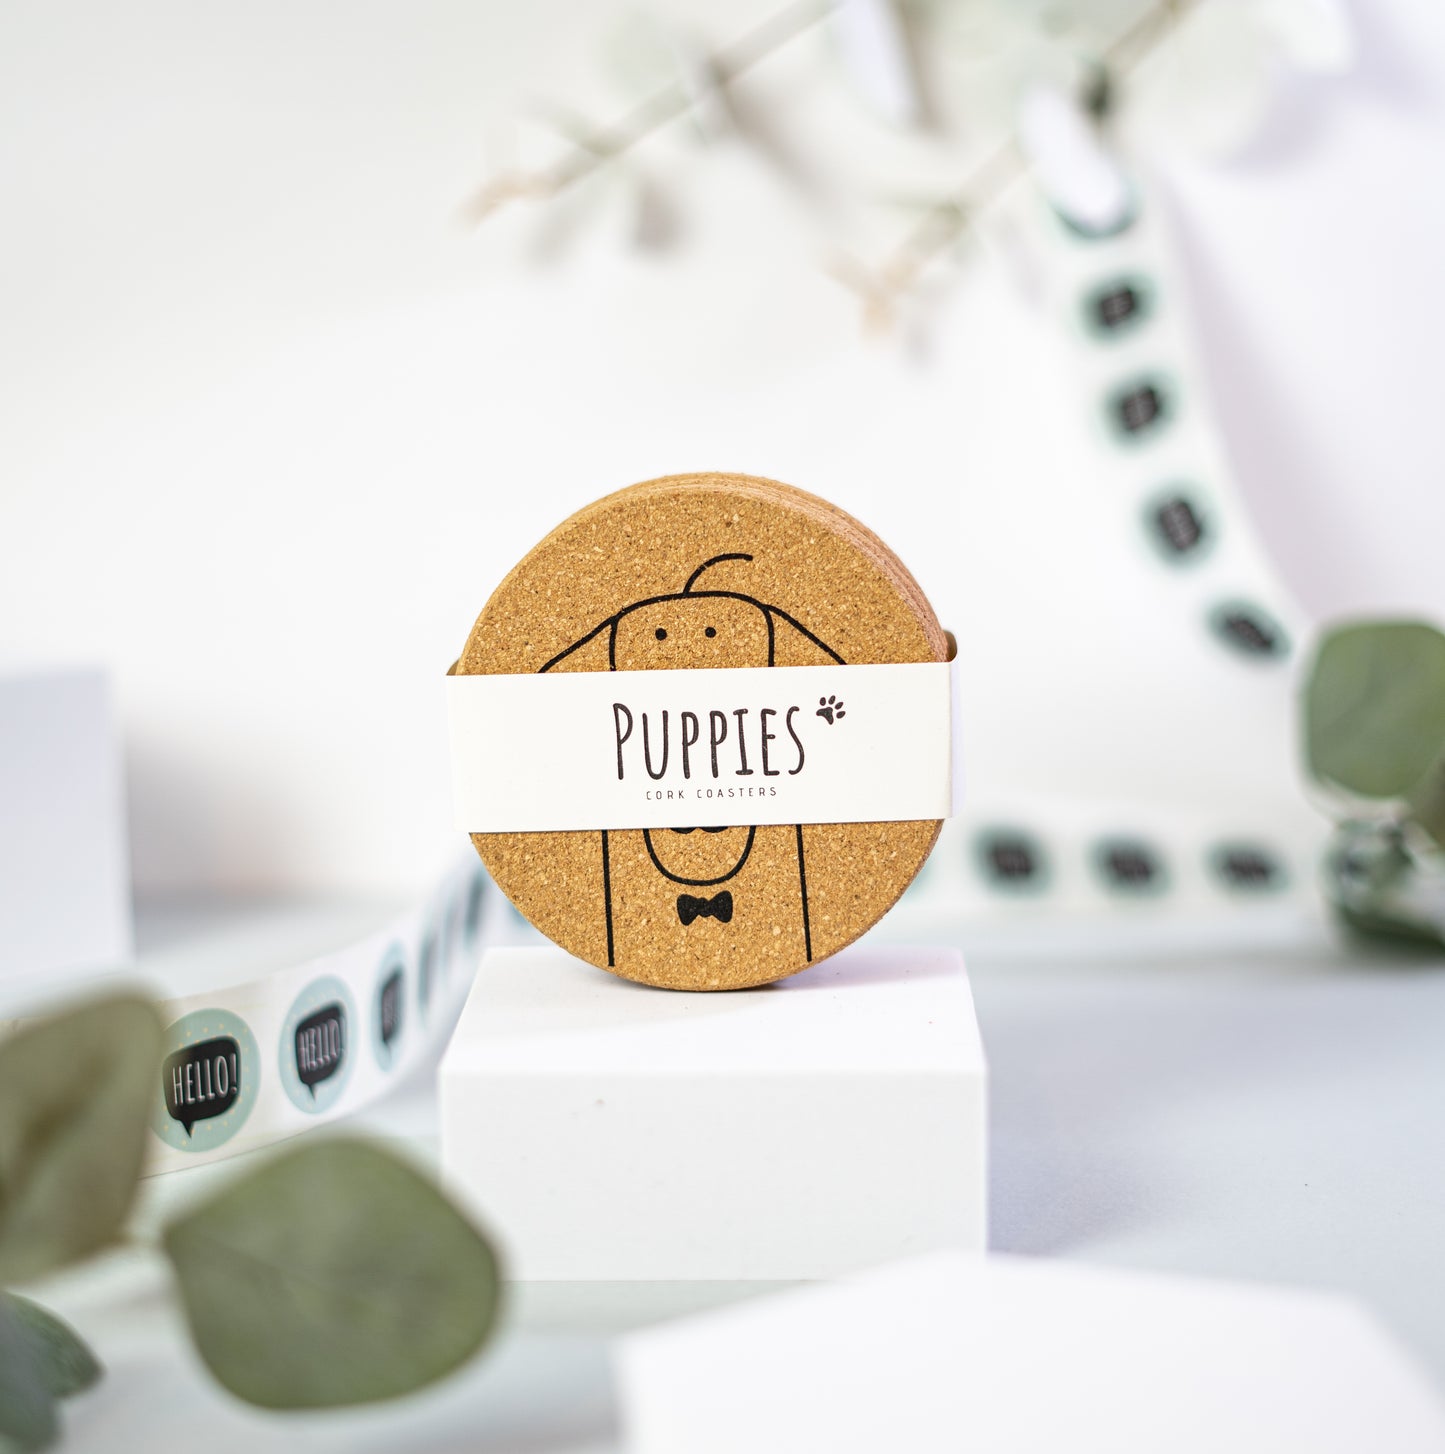 PUPPIES - Śliczny pies Podstawki korkowe, okrągłe, zestaw 6 szt.